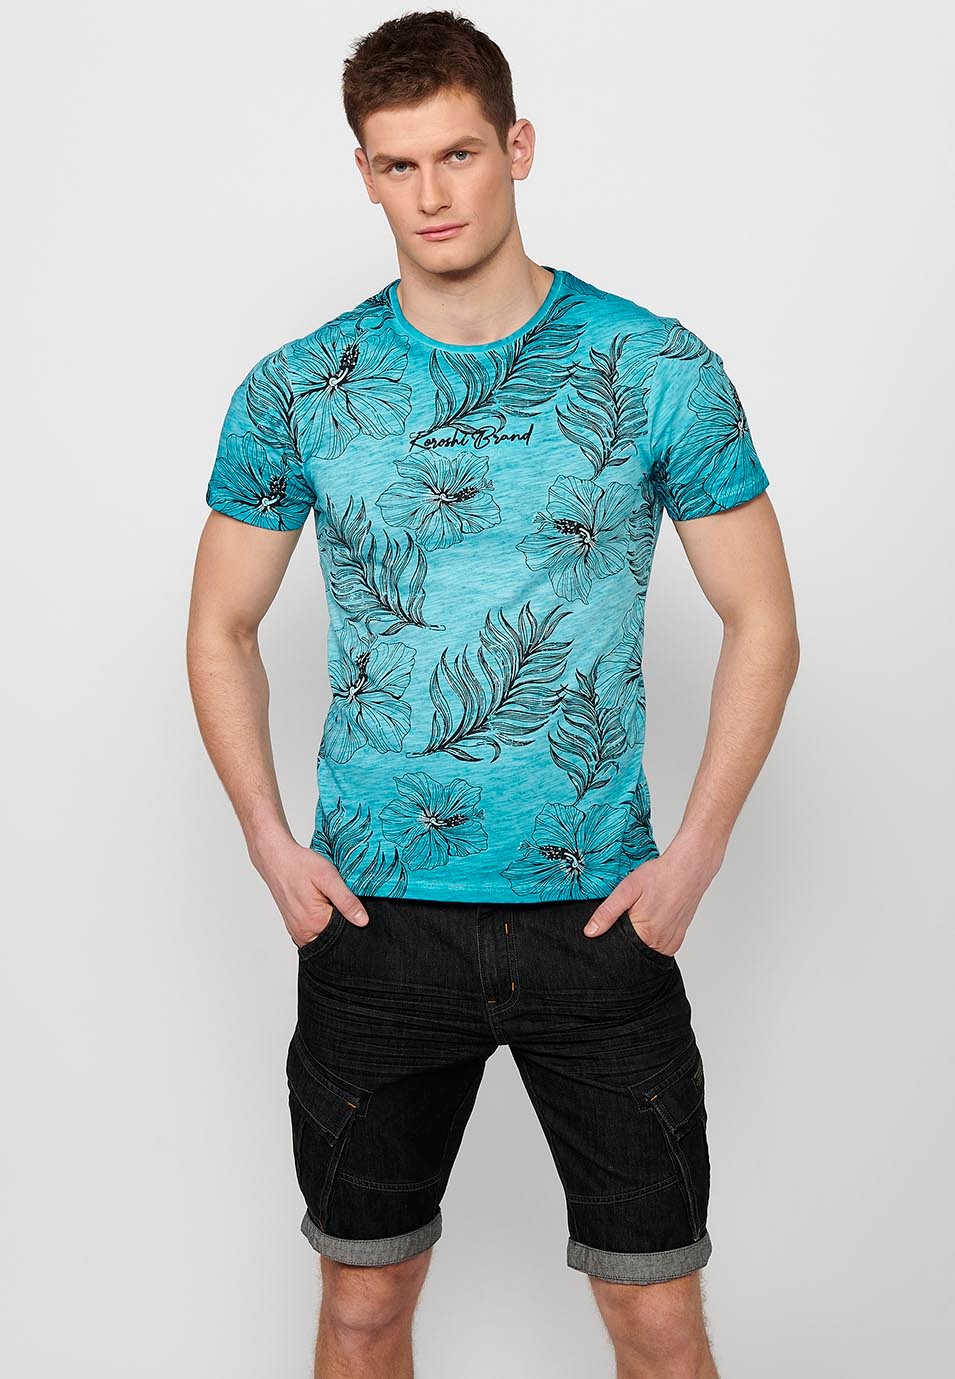 T-shirt manches courtes en coton, imprimé floral menthe pour homme